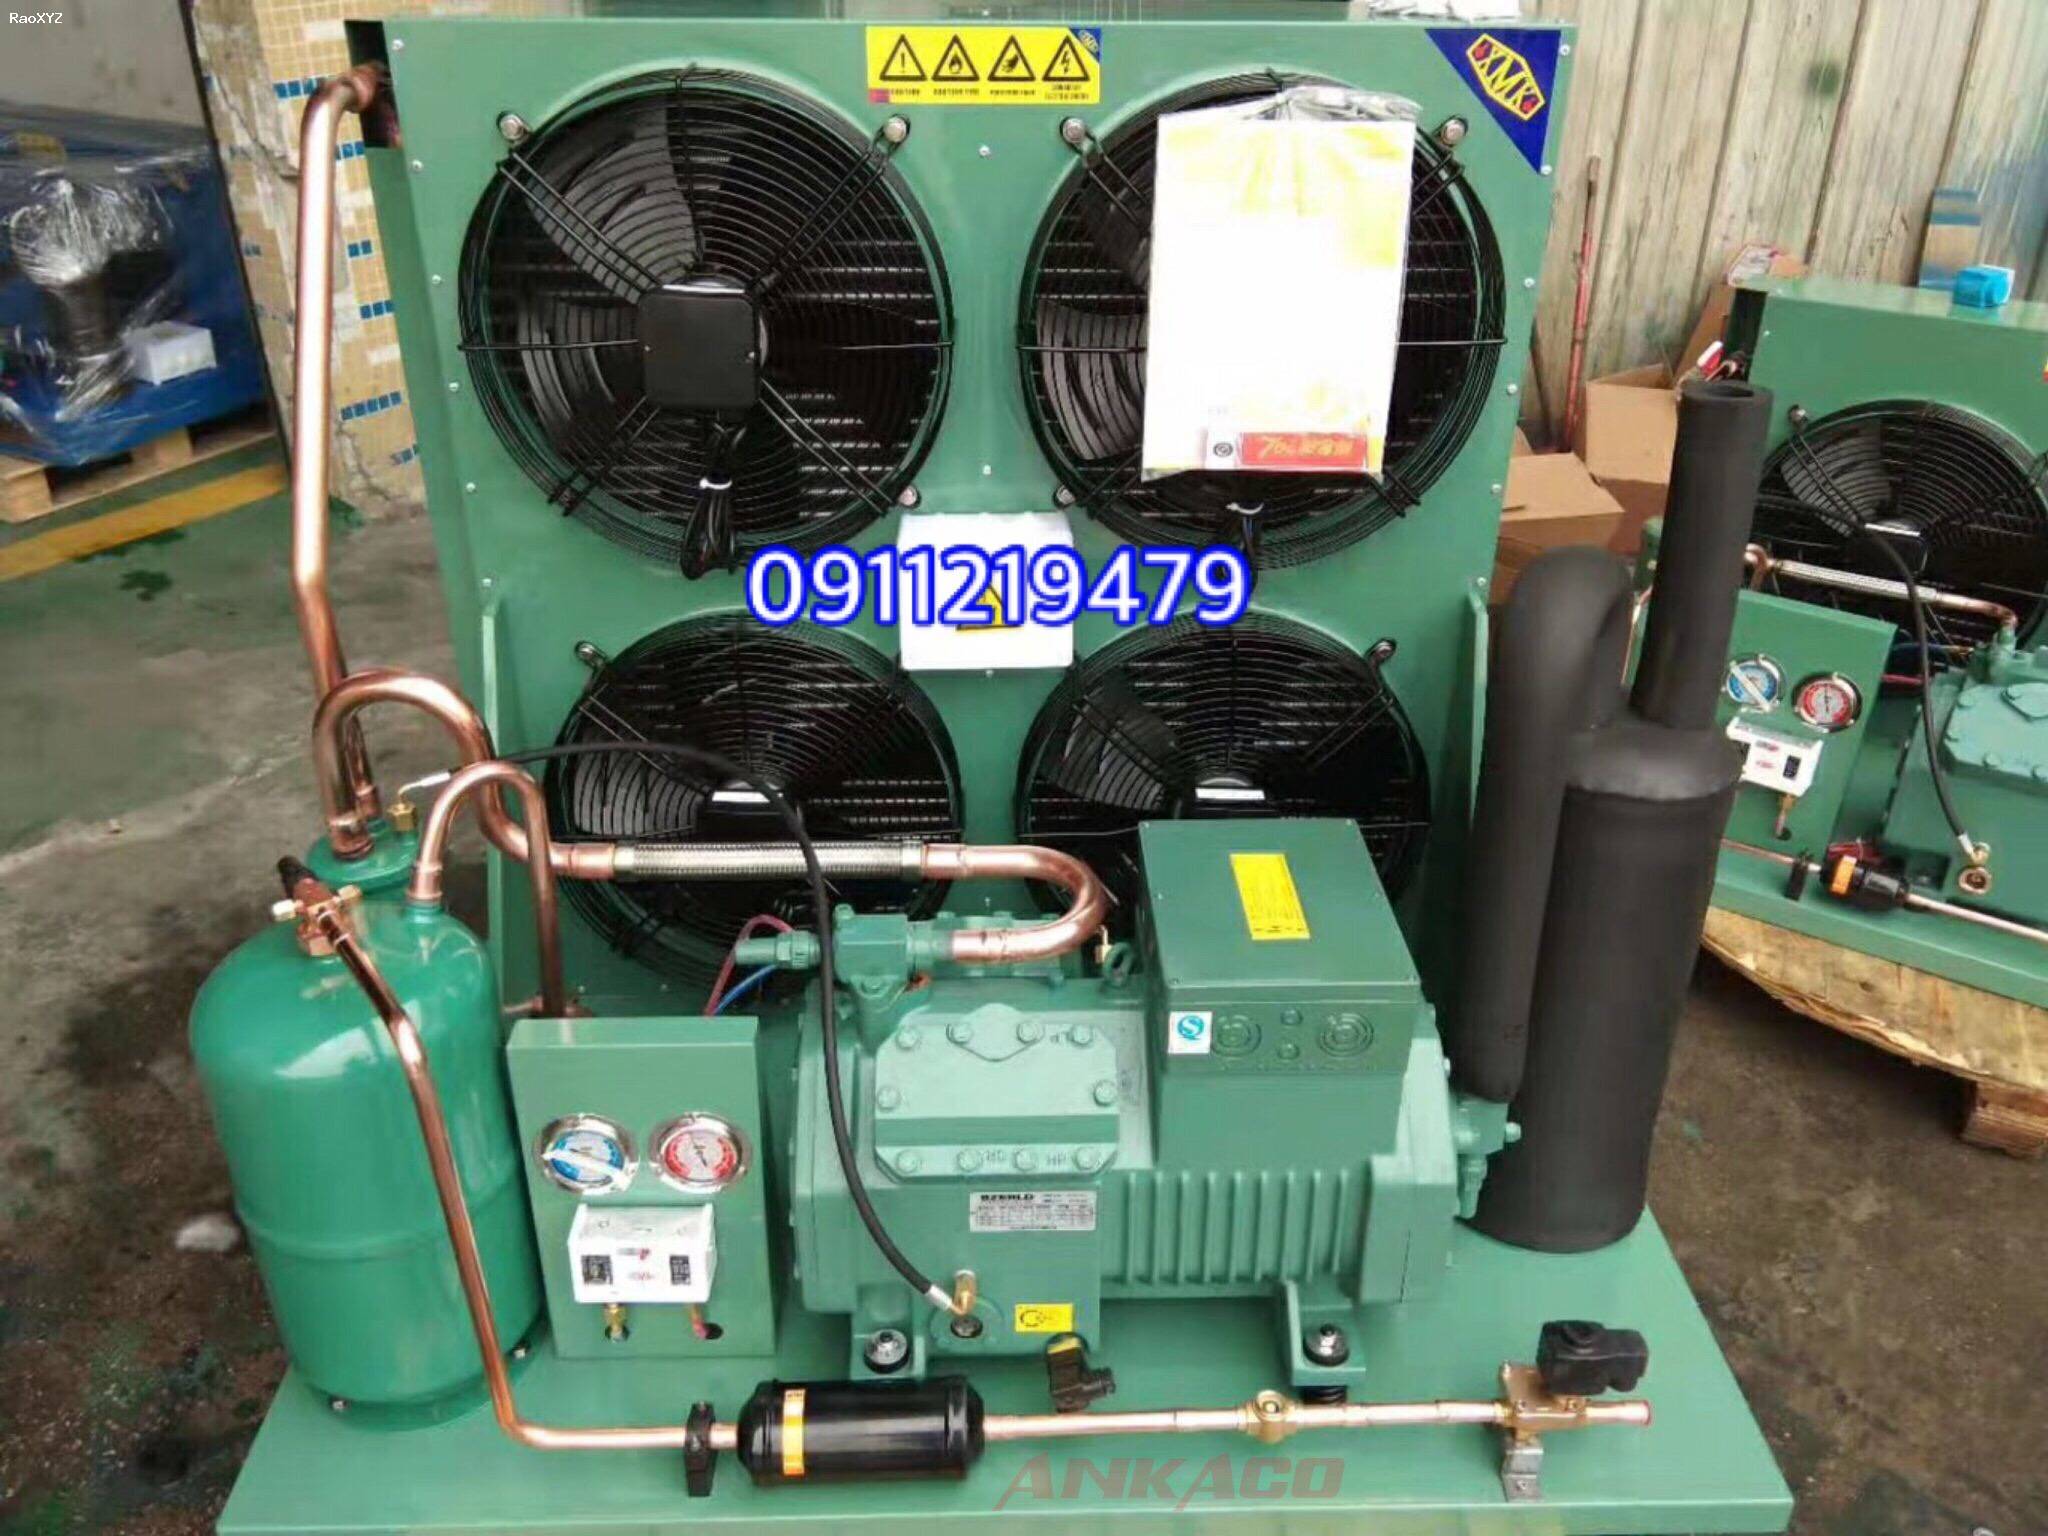 Cung cấp, lắp đặt cụm máy nén kho lạnh Bitzer 12 hp | 4NES-14 tại Khánh Hòa